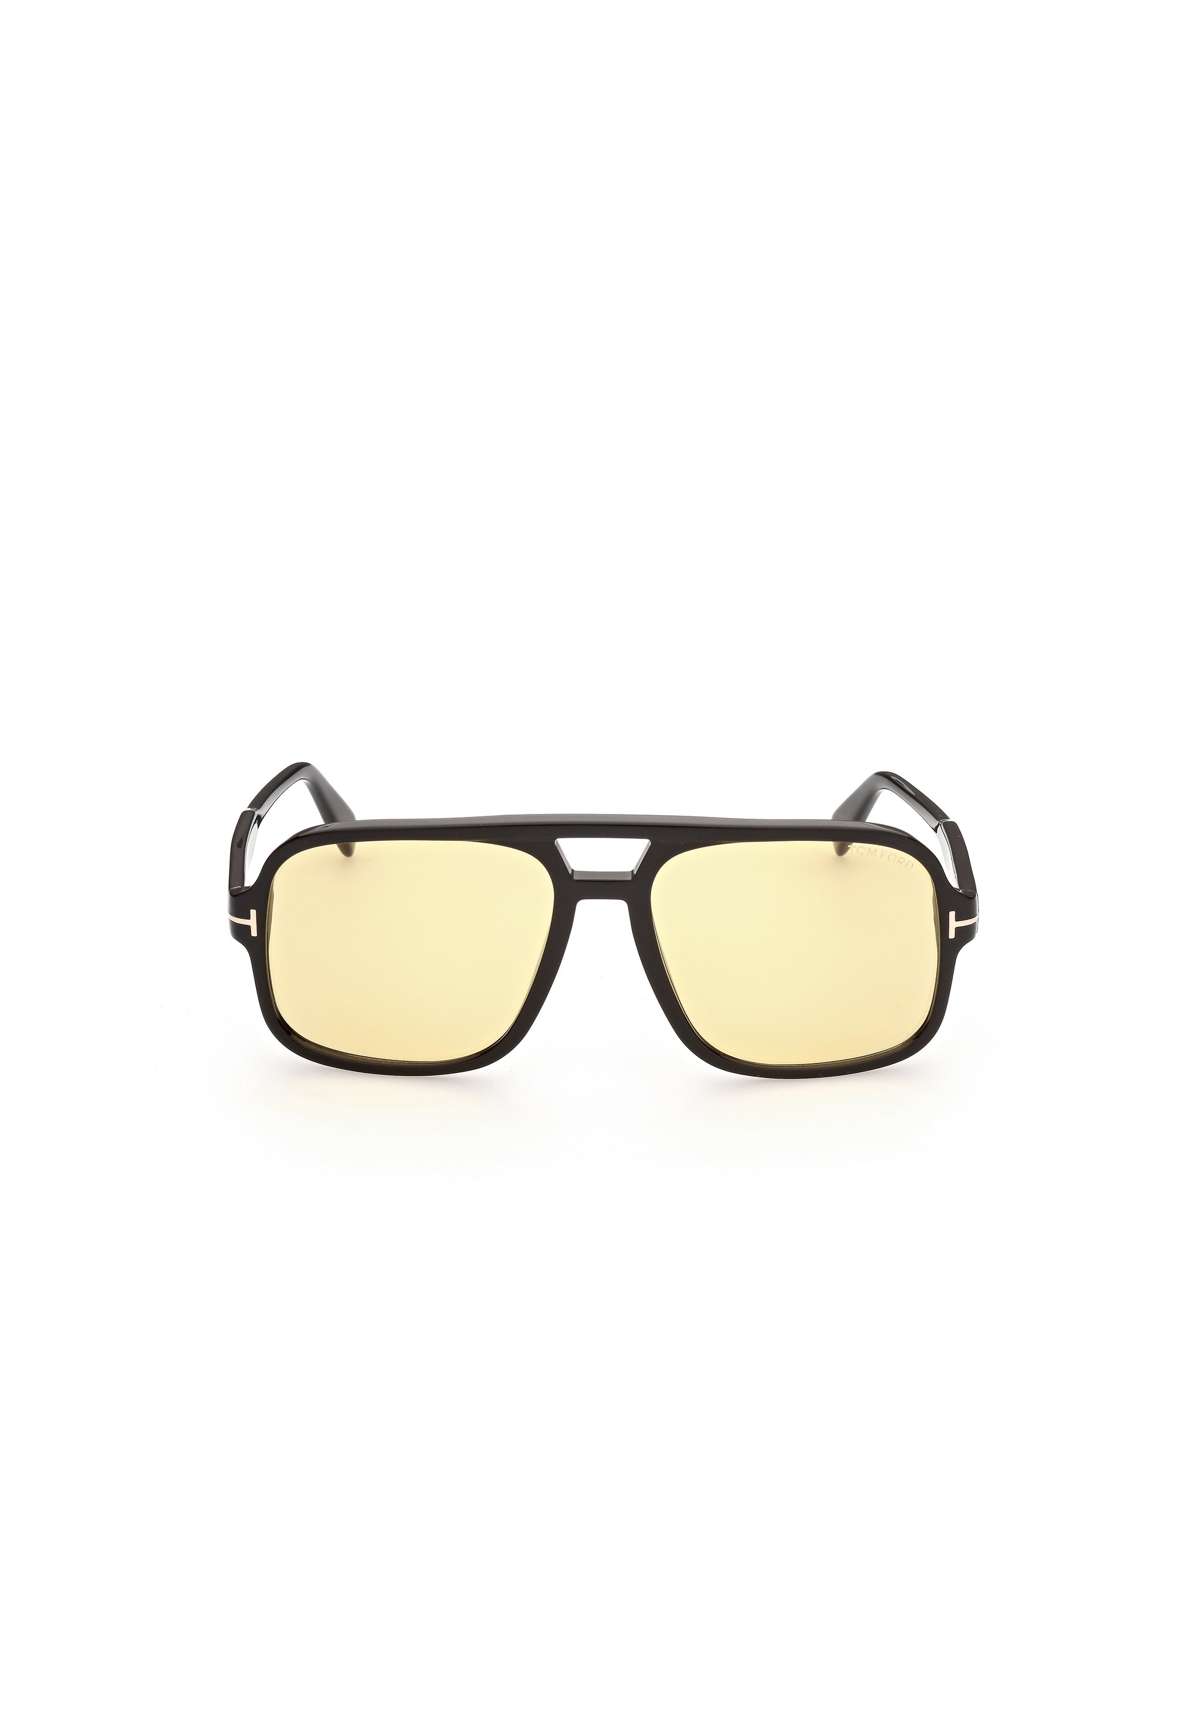 Солнцезащитные очки FALCONER-02